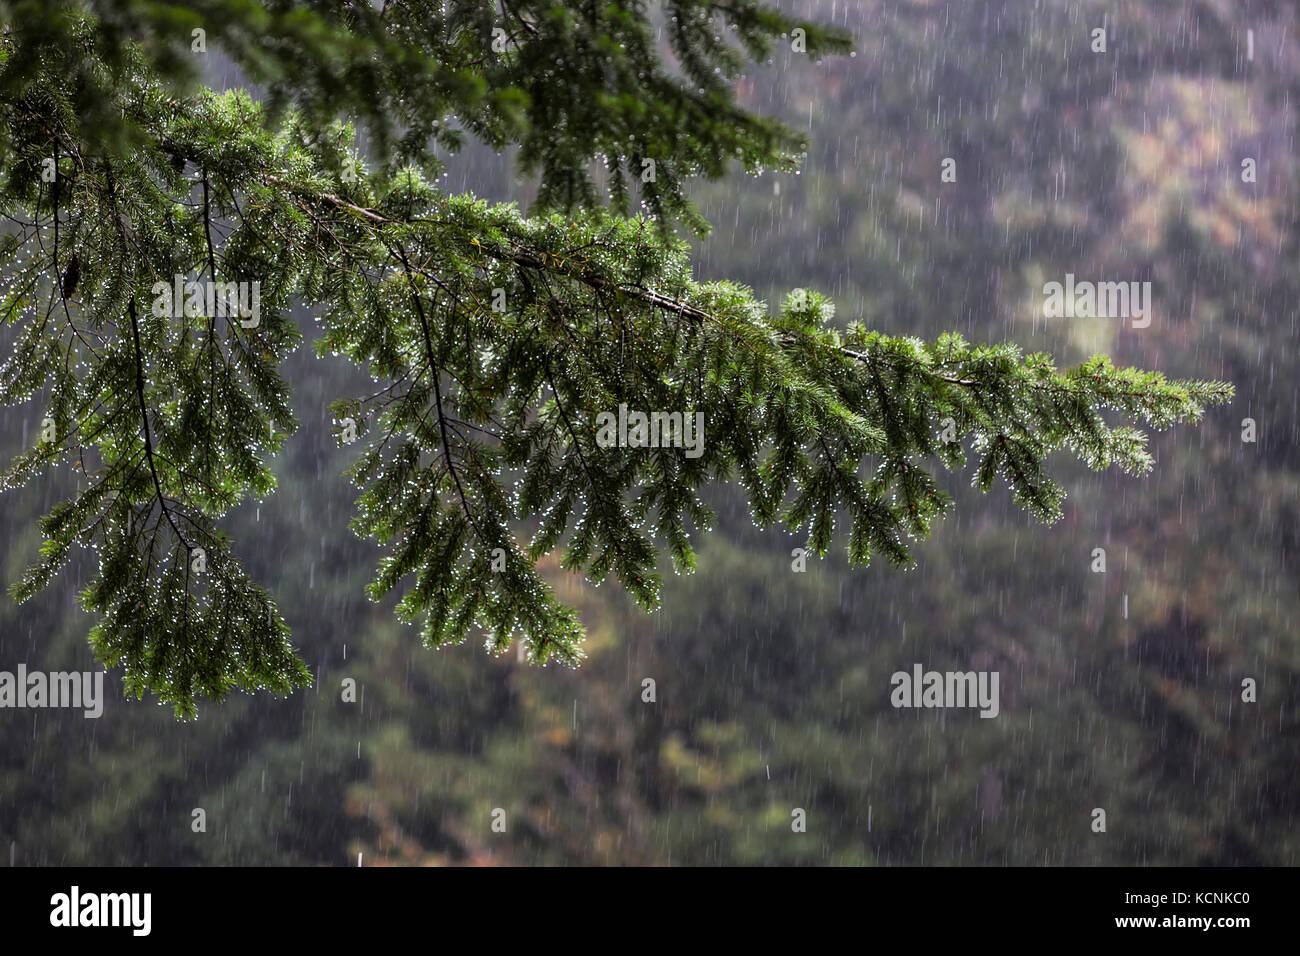 Une lourde pluie imbibe un sapin, une vision commune sur la côte ouest, la vallée de Comox. Banque D'Images